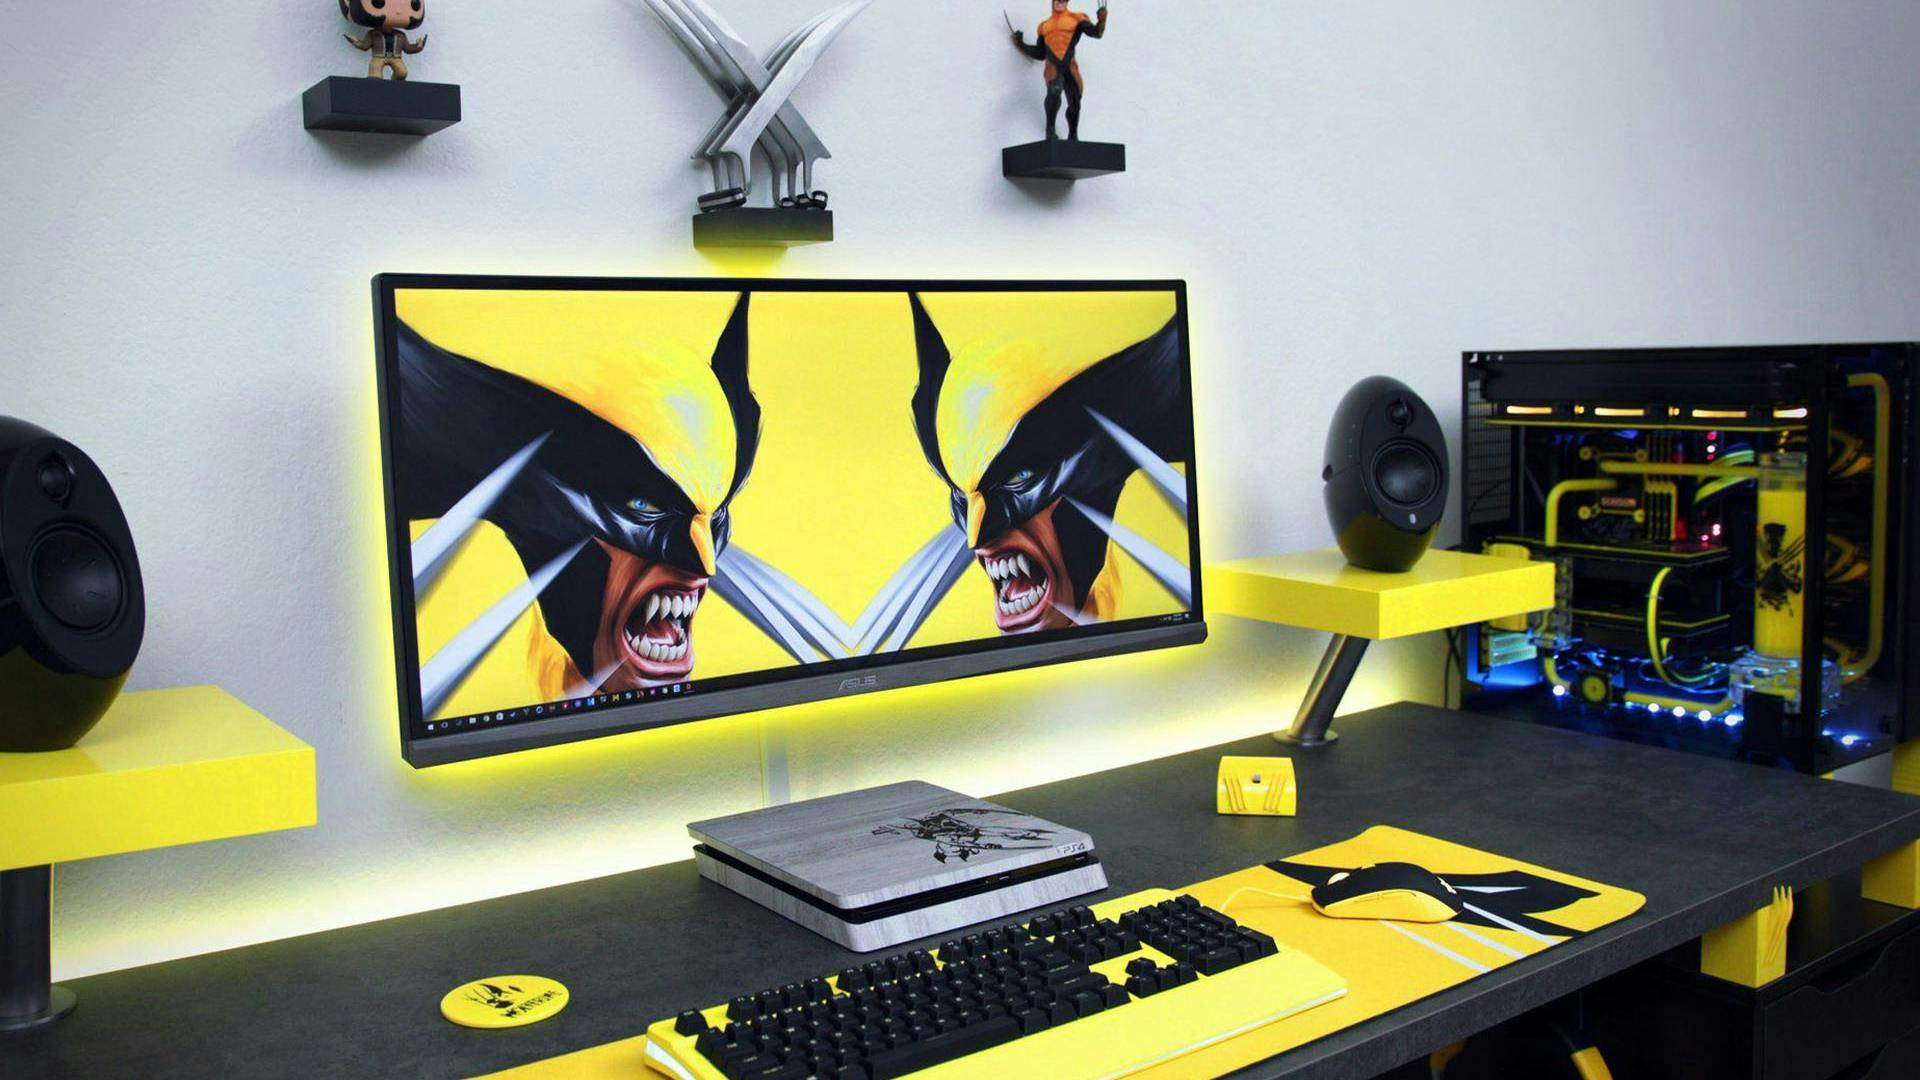 X-Men / Wolverine Themed gaming setup, minimalistisch exekutiert - so lieben wir es 